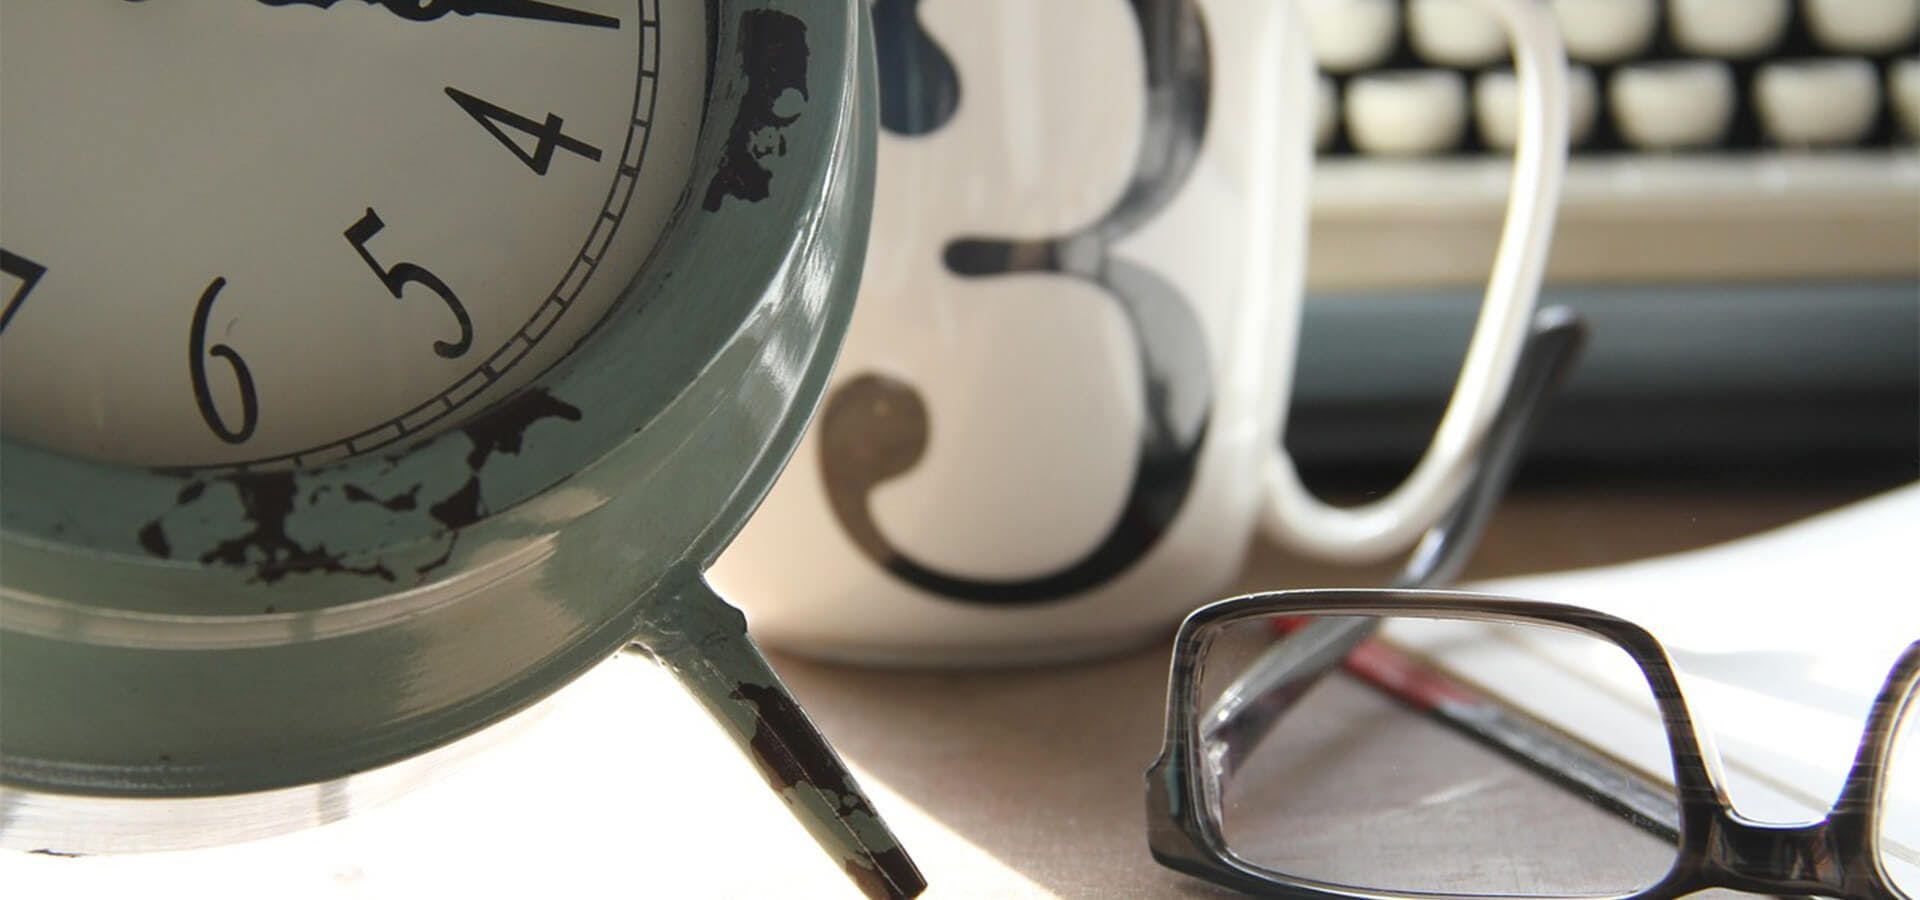 Mesa de trabajo con un despertador, una taza y unas gafas